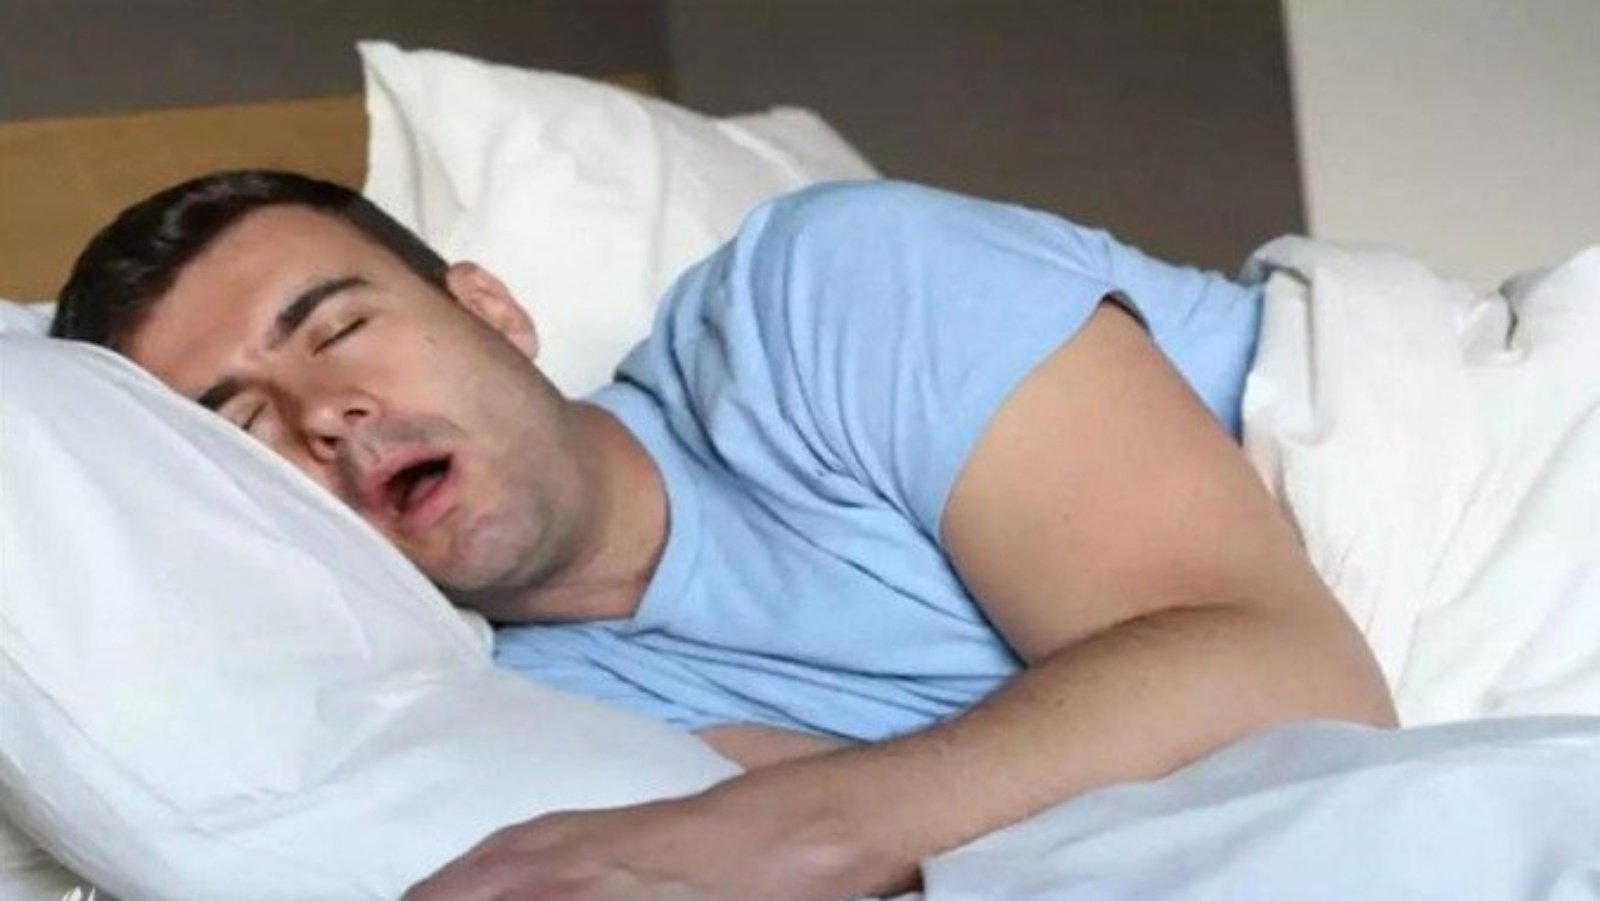 النوم القليل أو الكثير يرتبط بزيادة بالخرف والسكتة الدماغية لدى الأشخاص الأصحاء في منتصف العمر